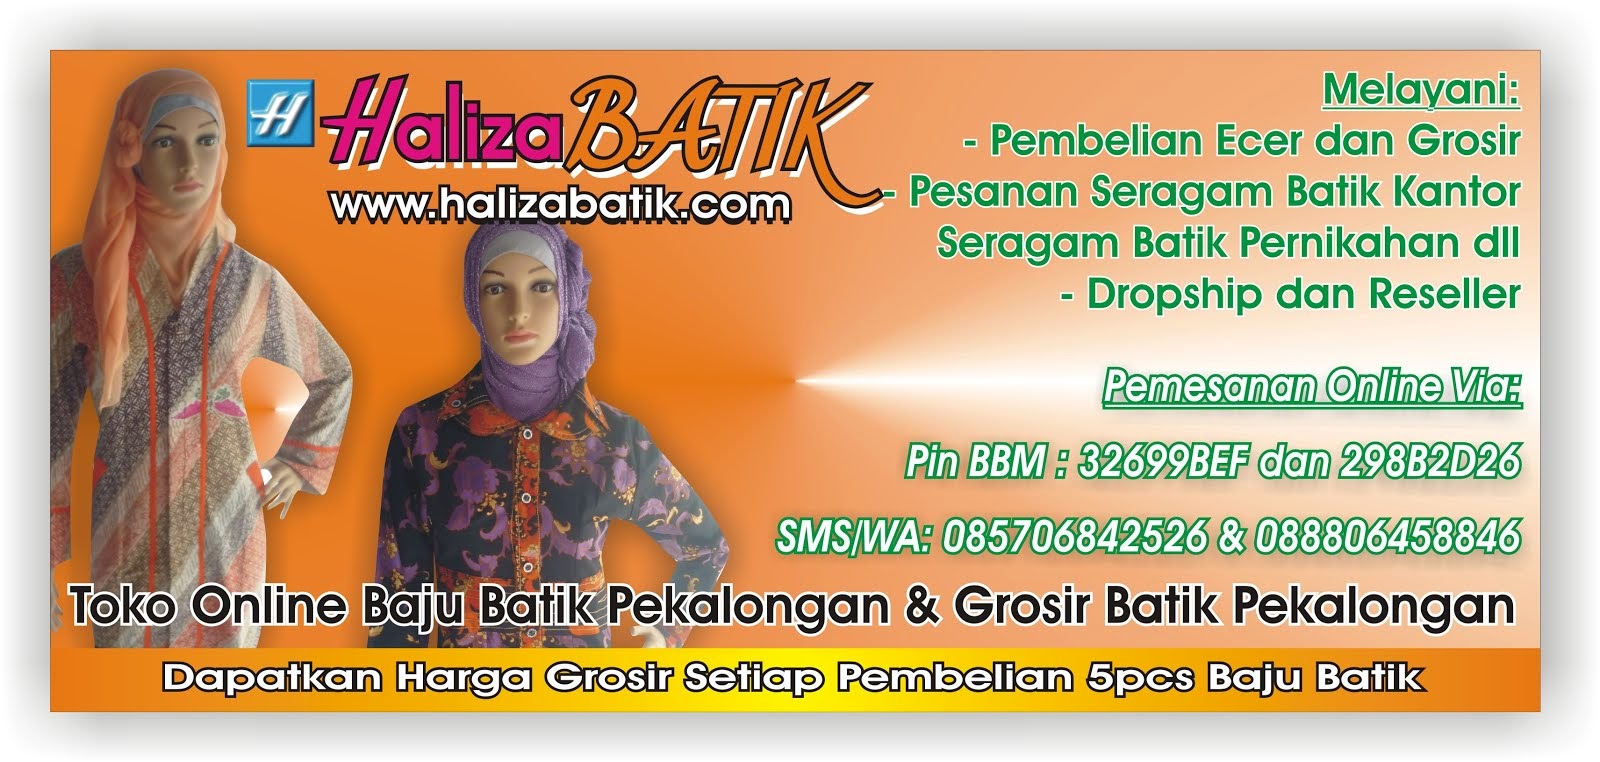 Model Batik Haliza, Model Batik Kombinasi